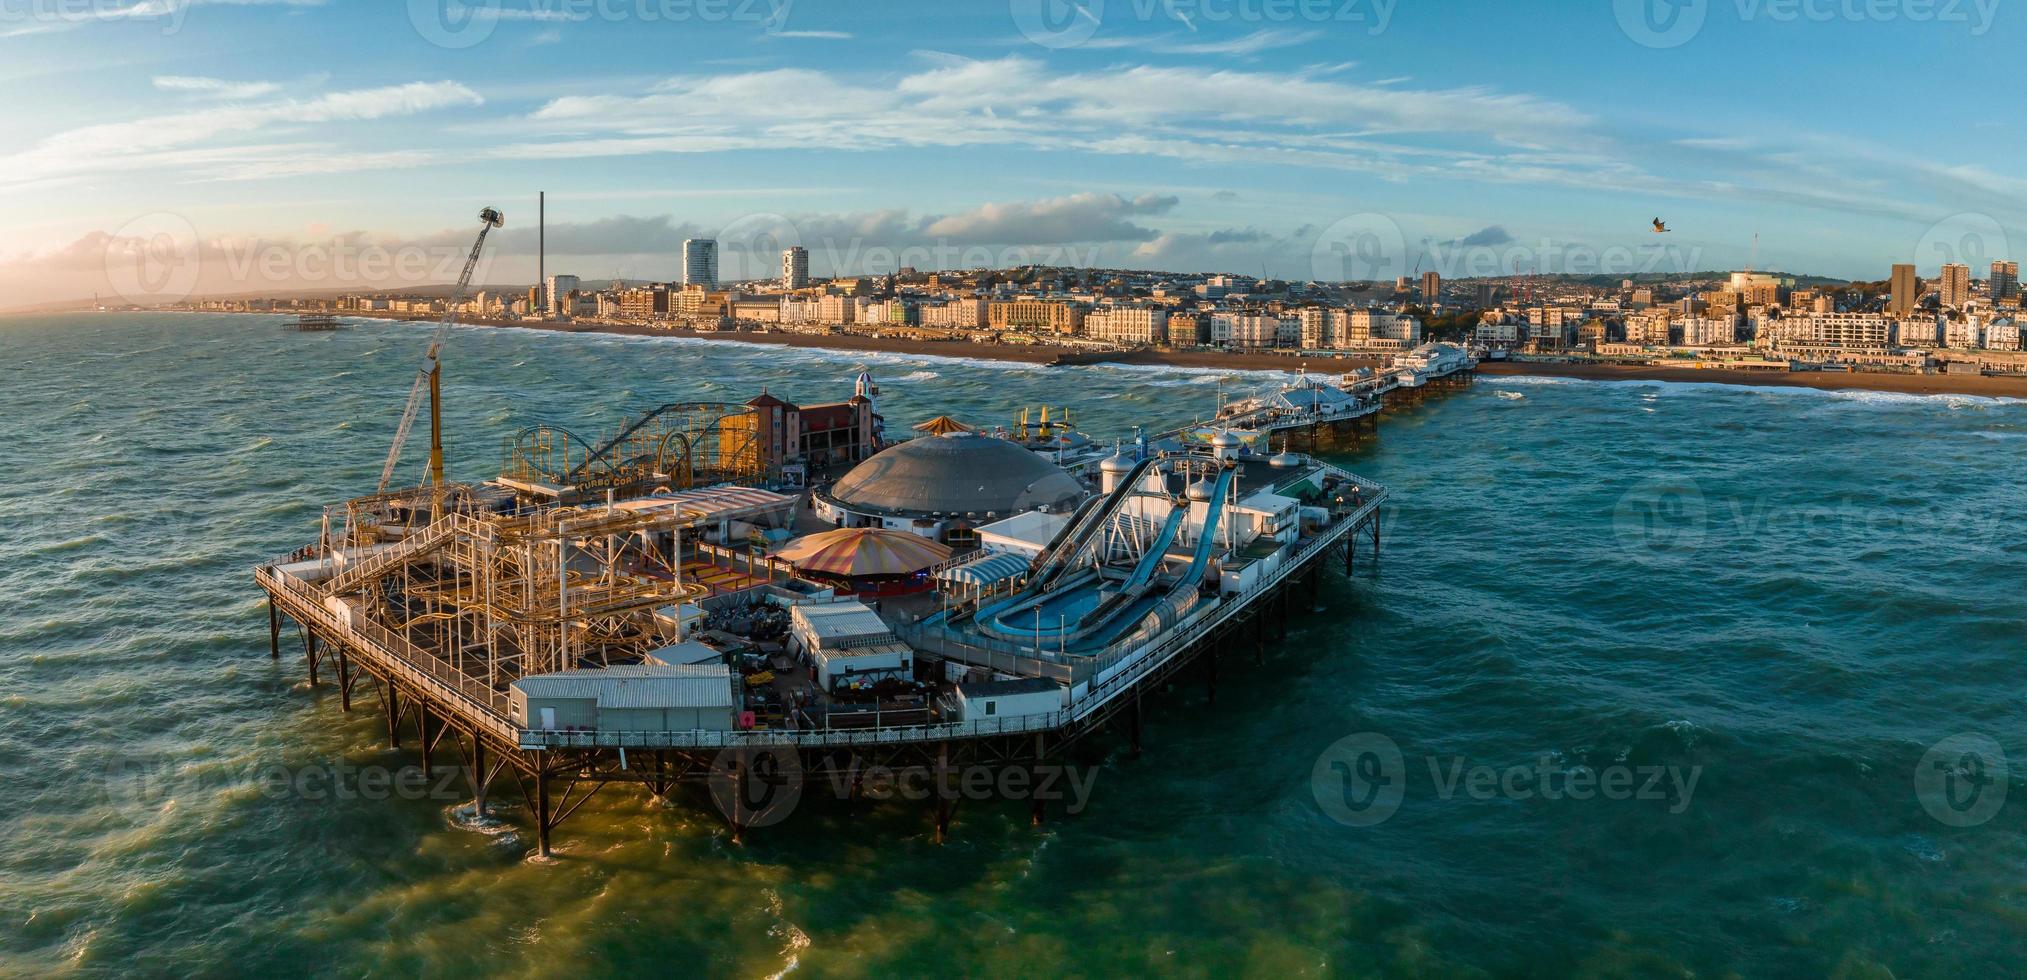 Luftbild von Brighton Palace Pier, mit der Strandpromenade dahinter. foto